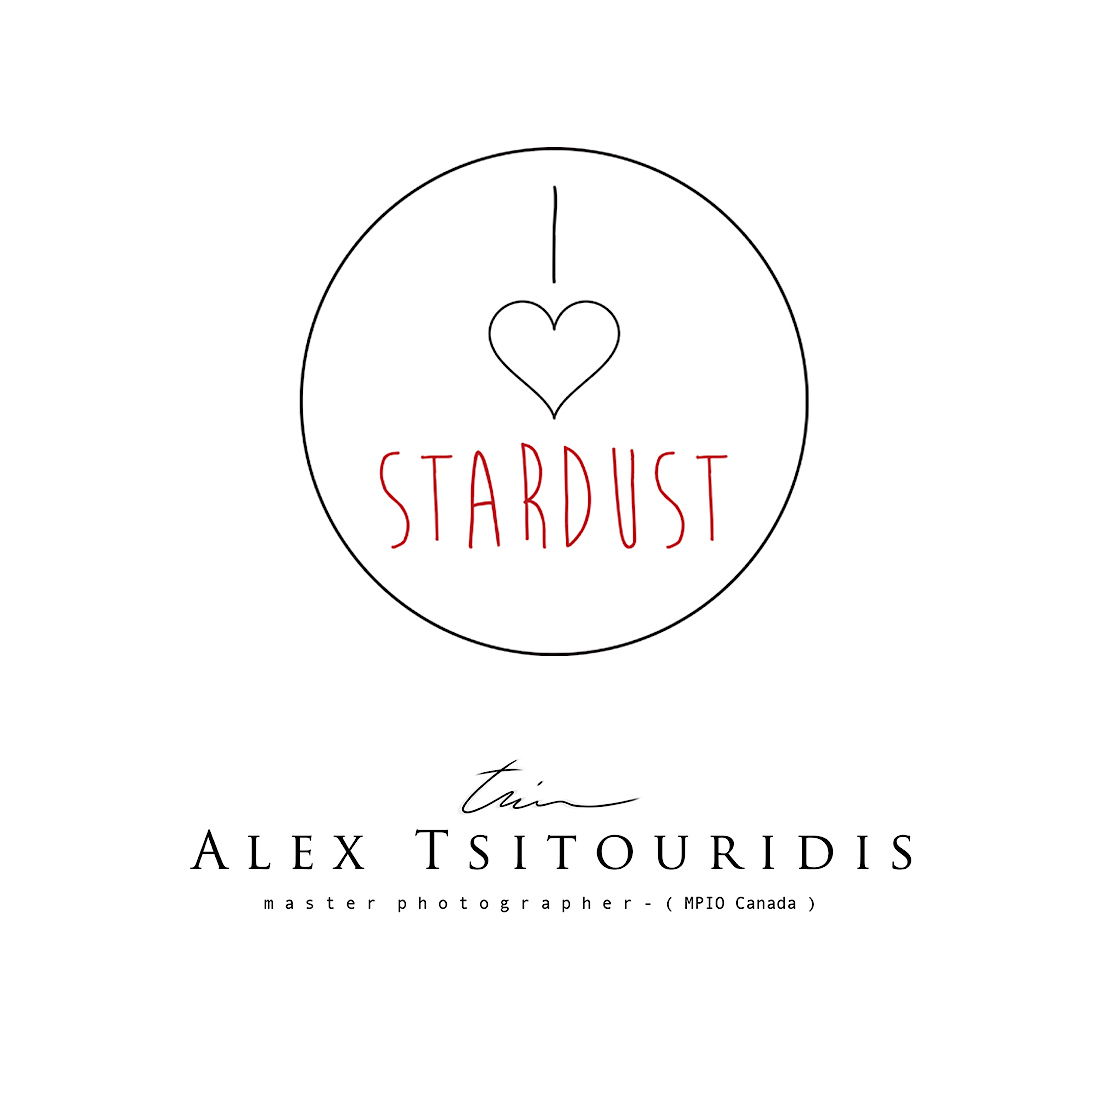 Stardust studio photography - ALEXANDROS TSITOURIDIS, Φωτογράφοι